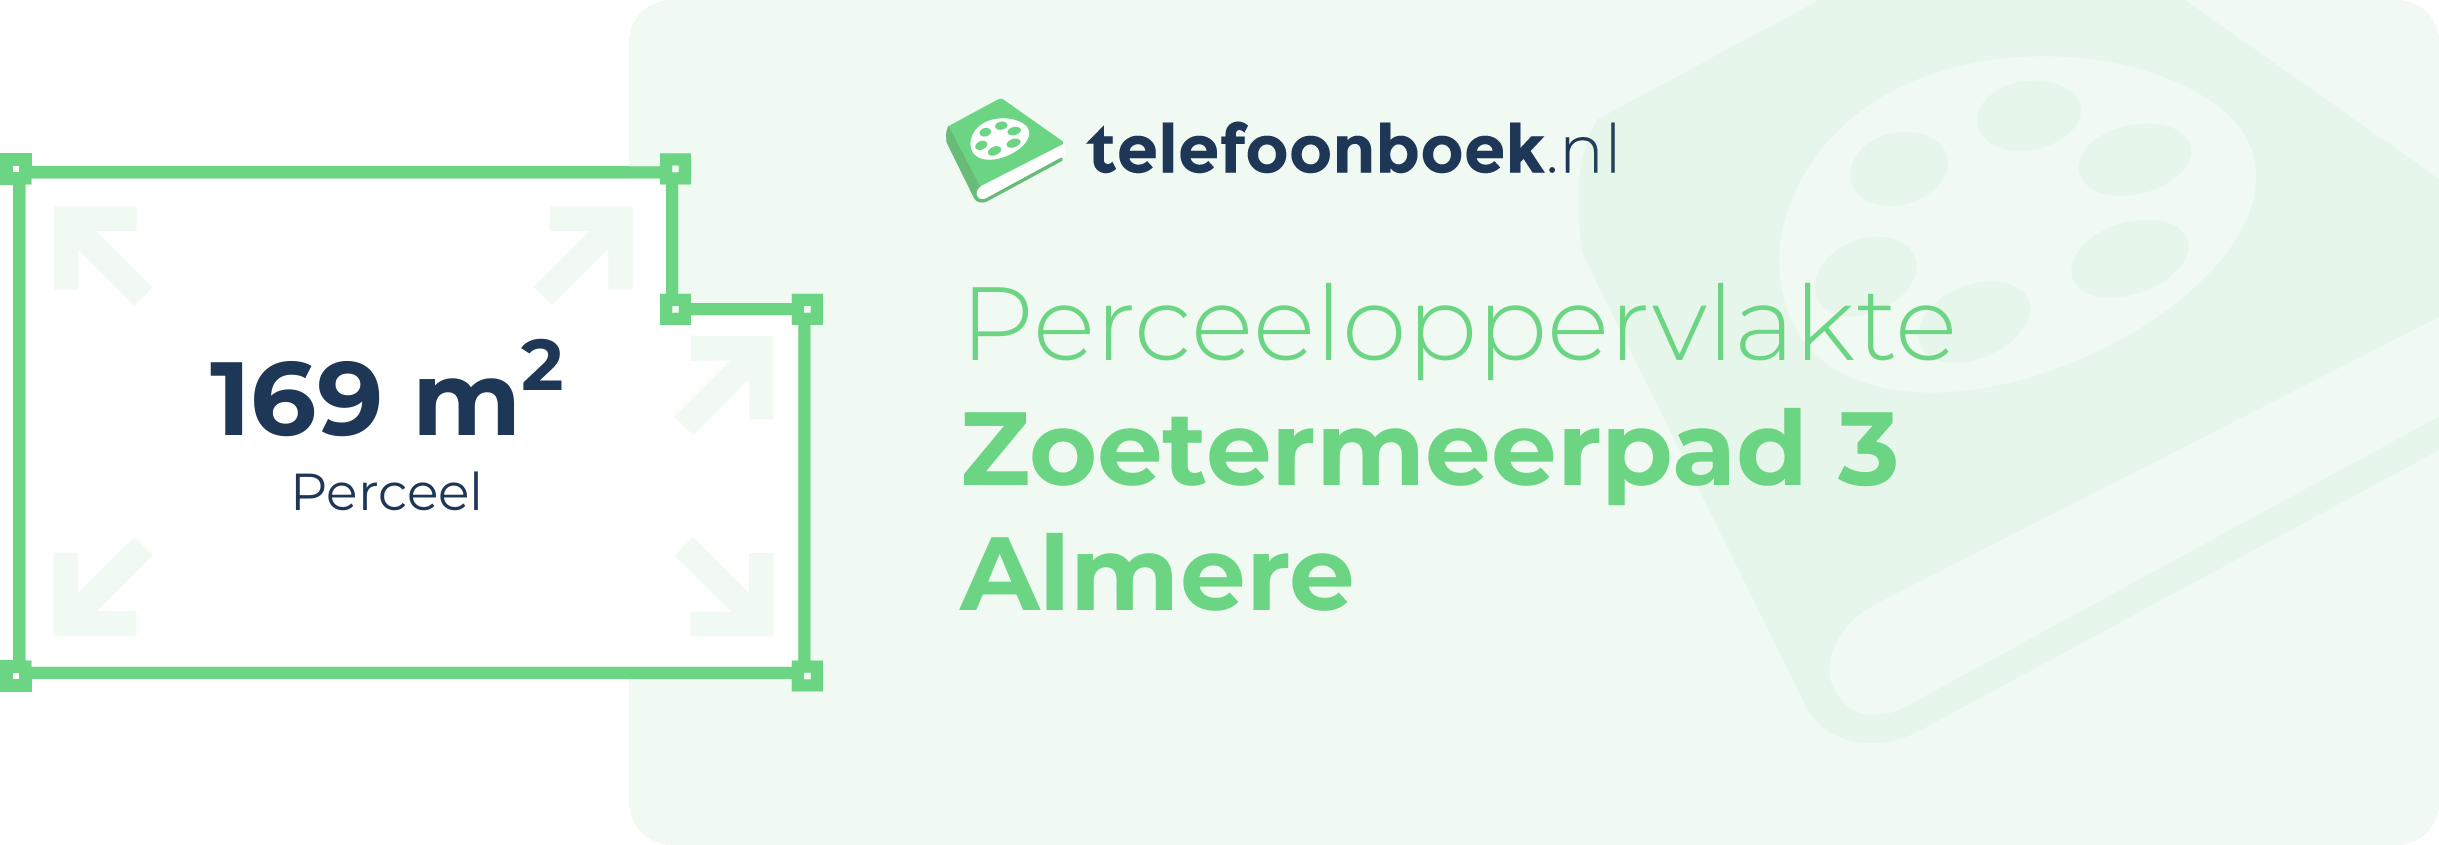 Perceeloppervlakte Zoetermeerpad 3 Almere